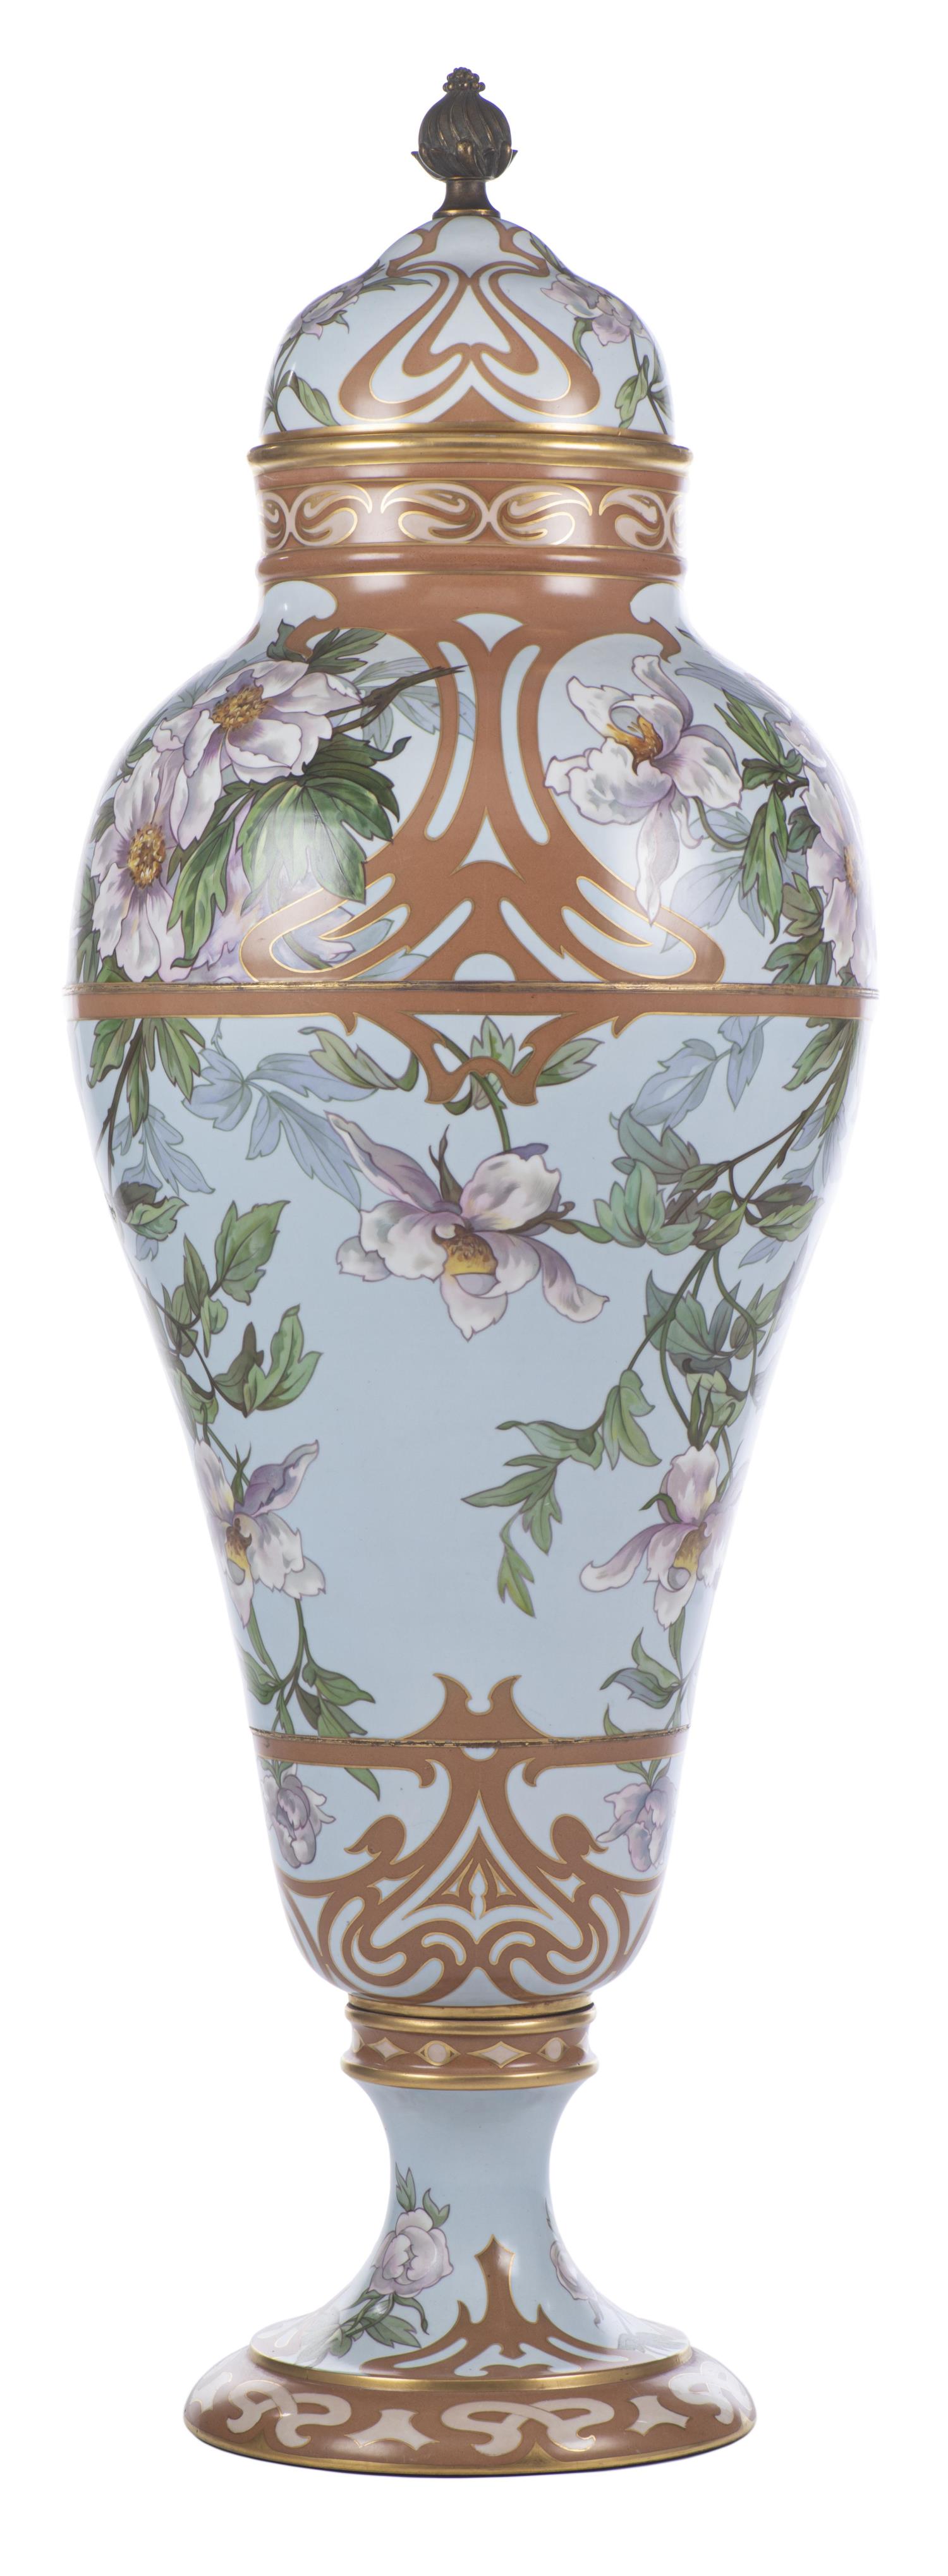 Grand vase en porcelaine de Limoges France par W.G. & Co par W. Guerin & Cie - Image 3 of 18